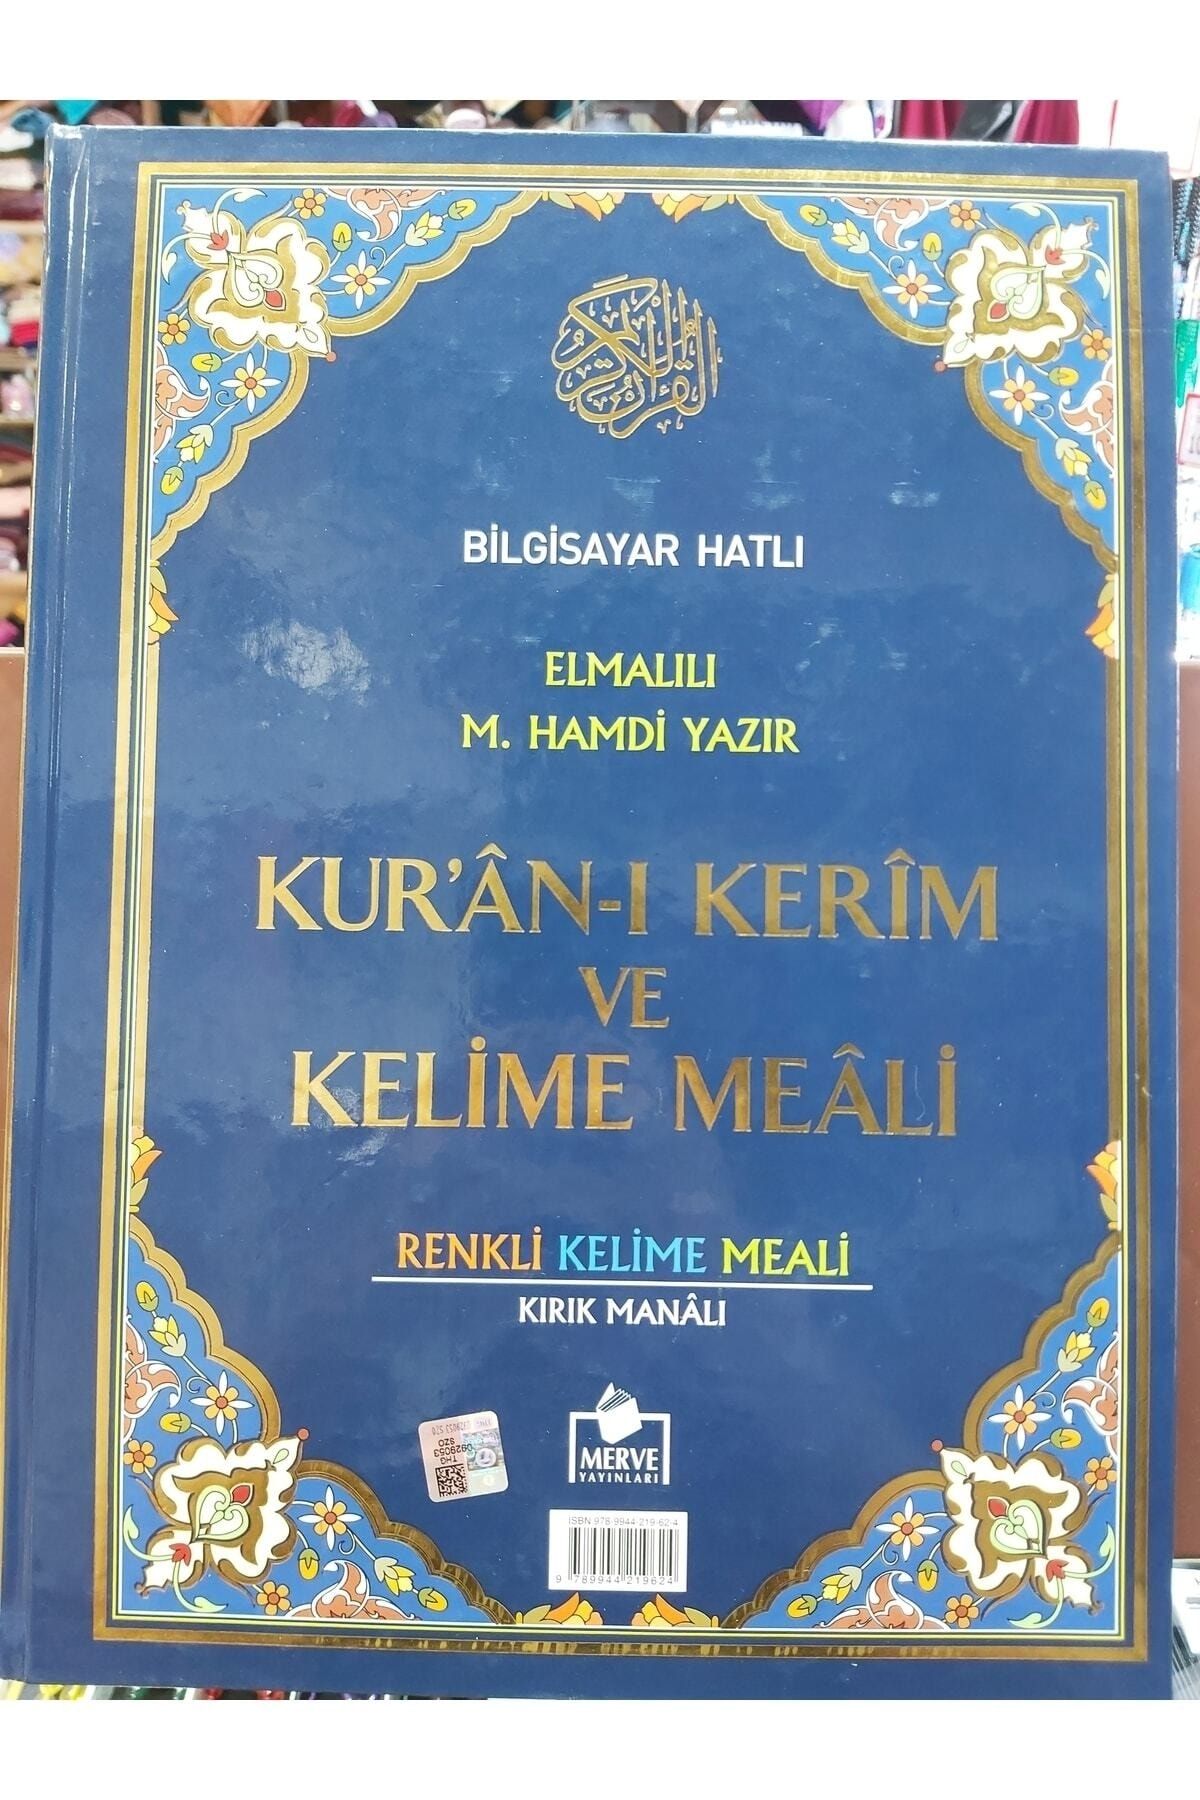 Merve Yayınları Kur'an-ı Kerim Ve Kelime Meali Bilgisayar Hatlı Cami Boy (KELİME 001) & Renkli Kelime Meali - Kır...